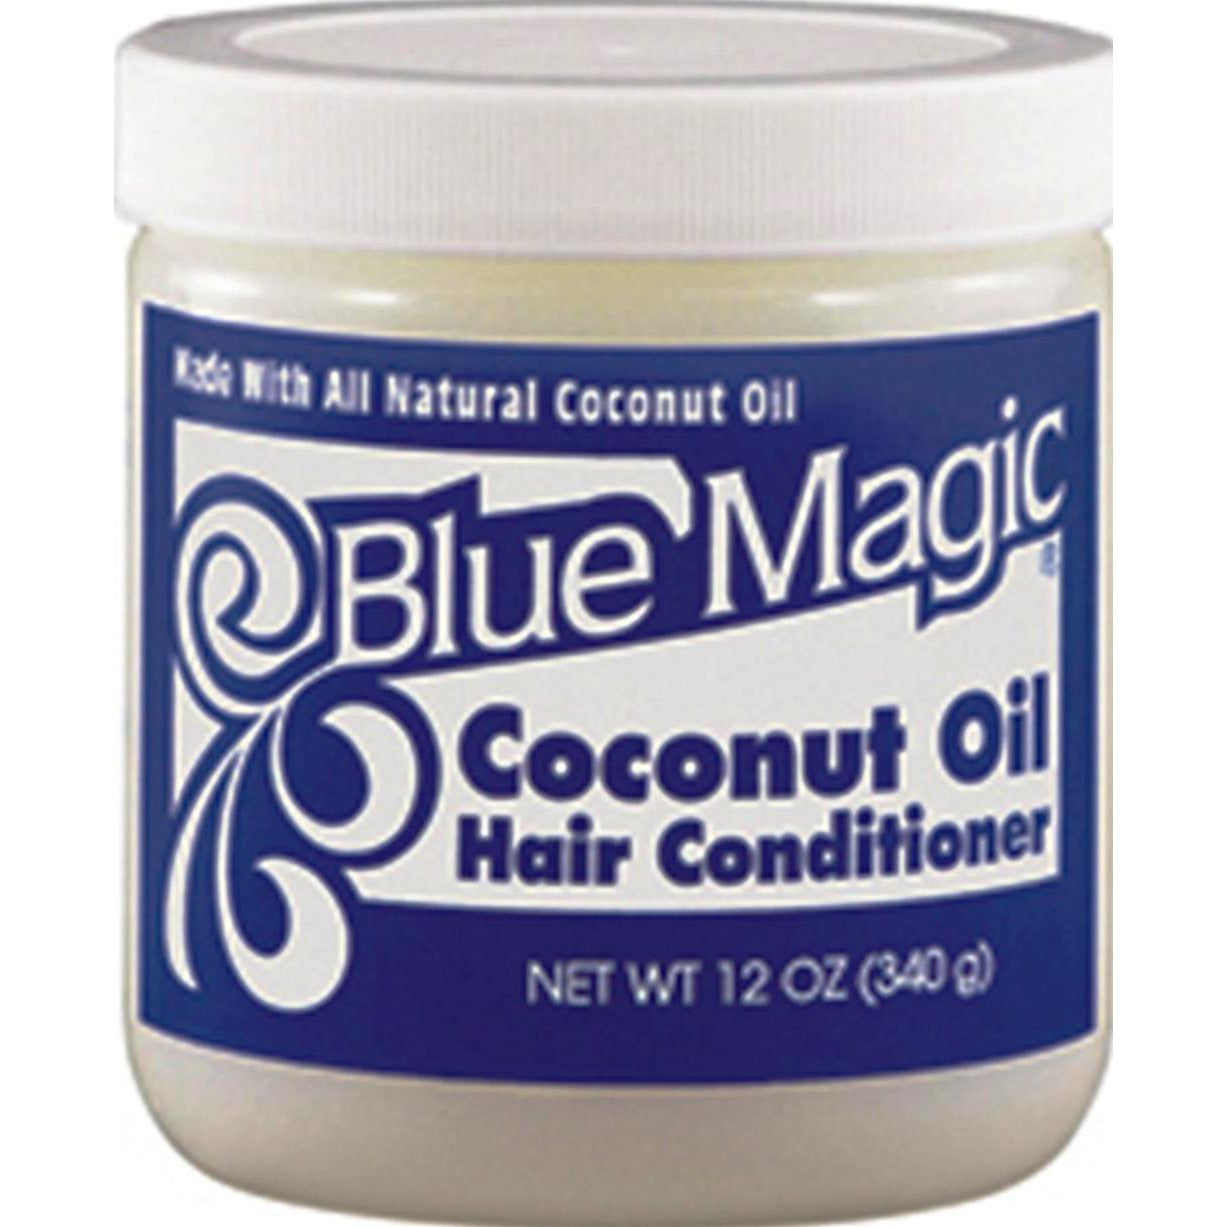 4th Ave Market: Blue Magic Coconut Oil Conditioner